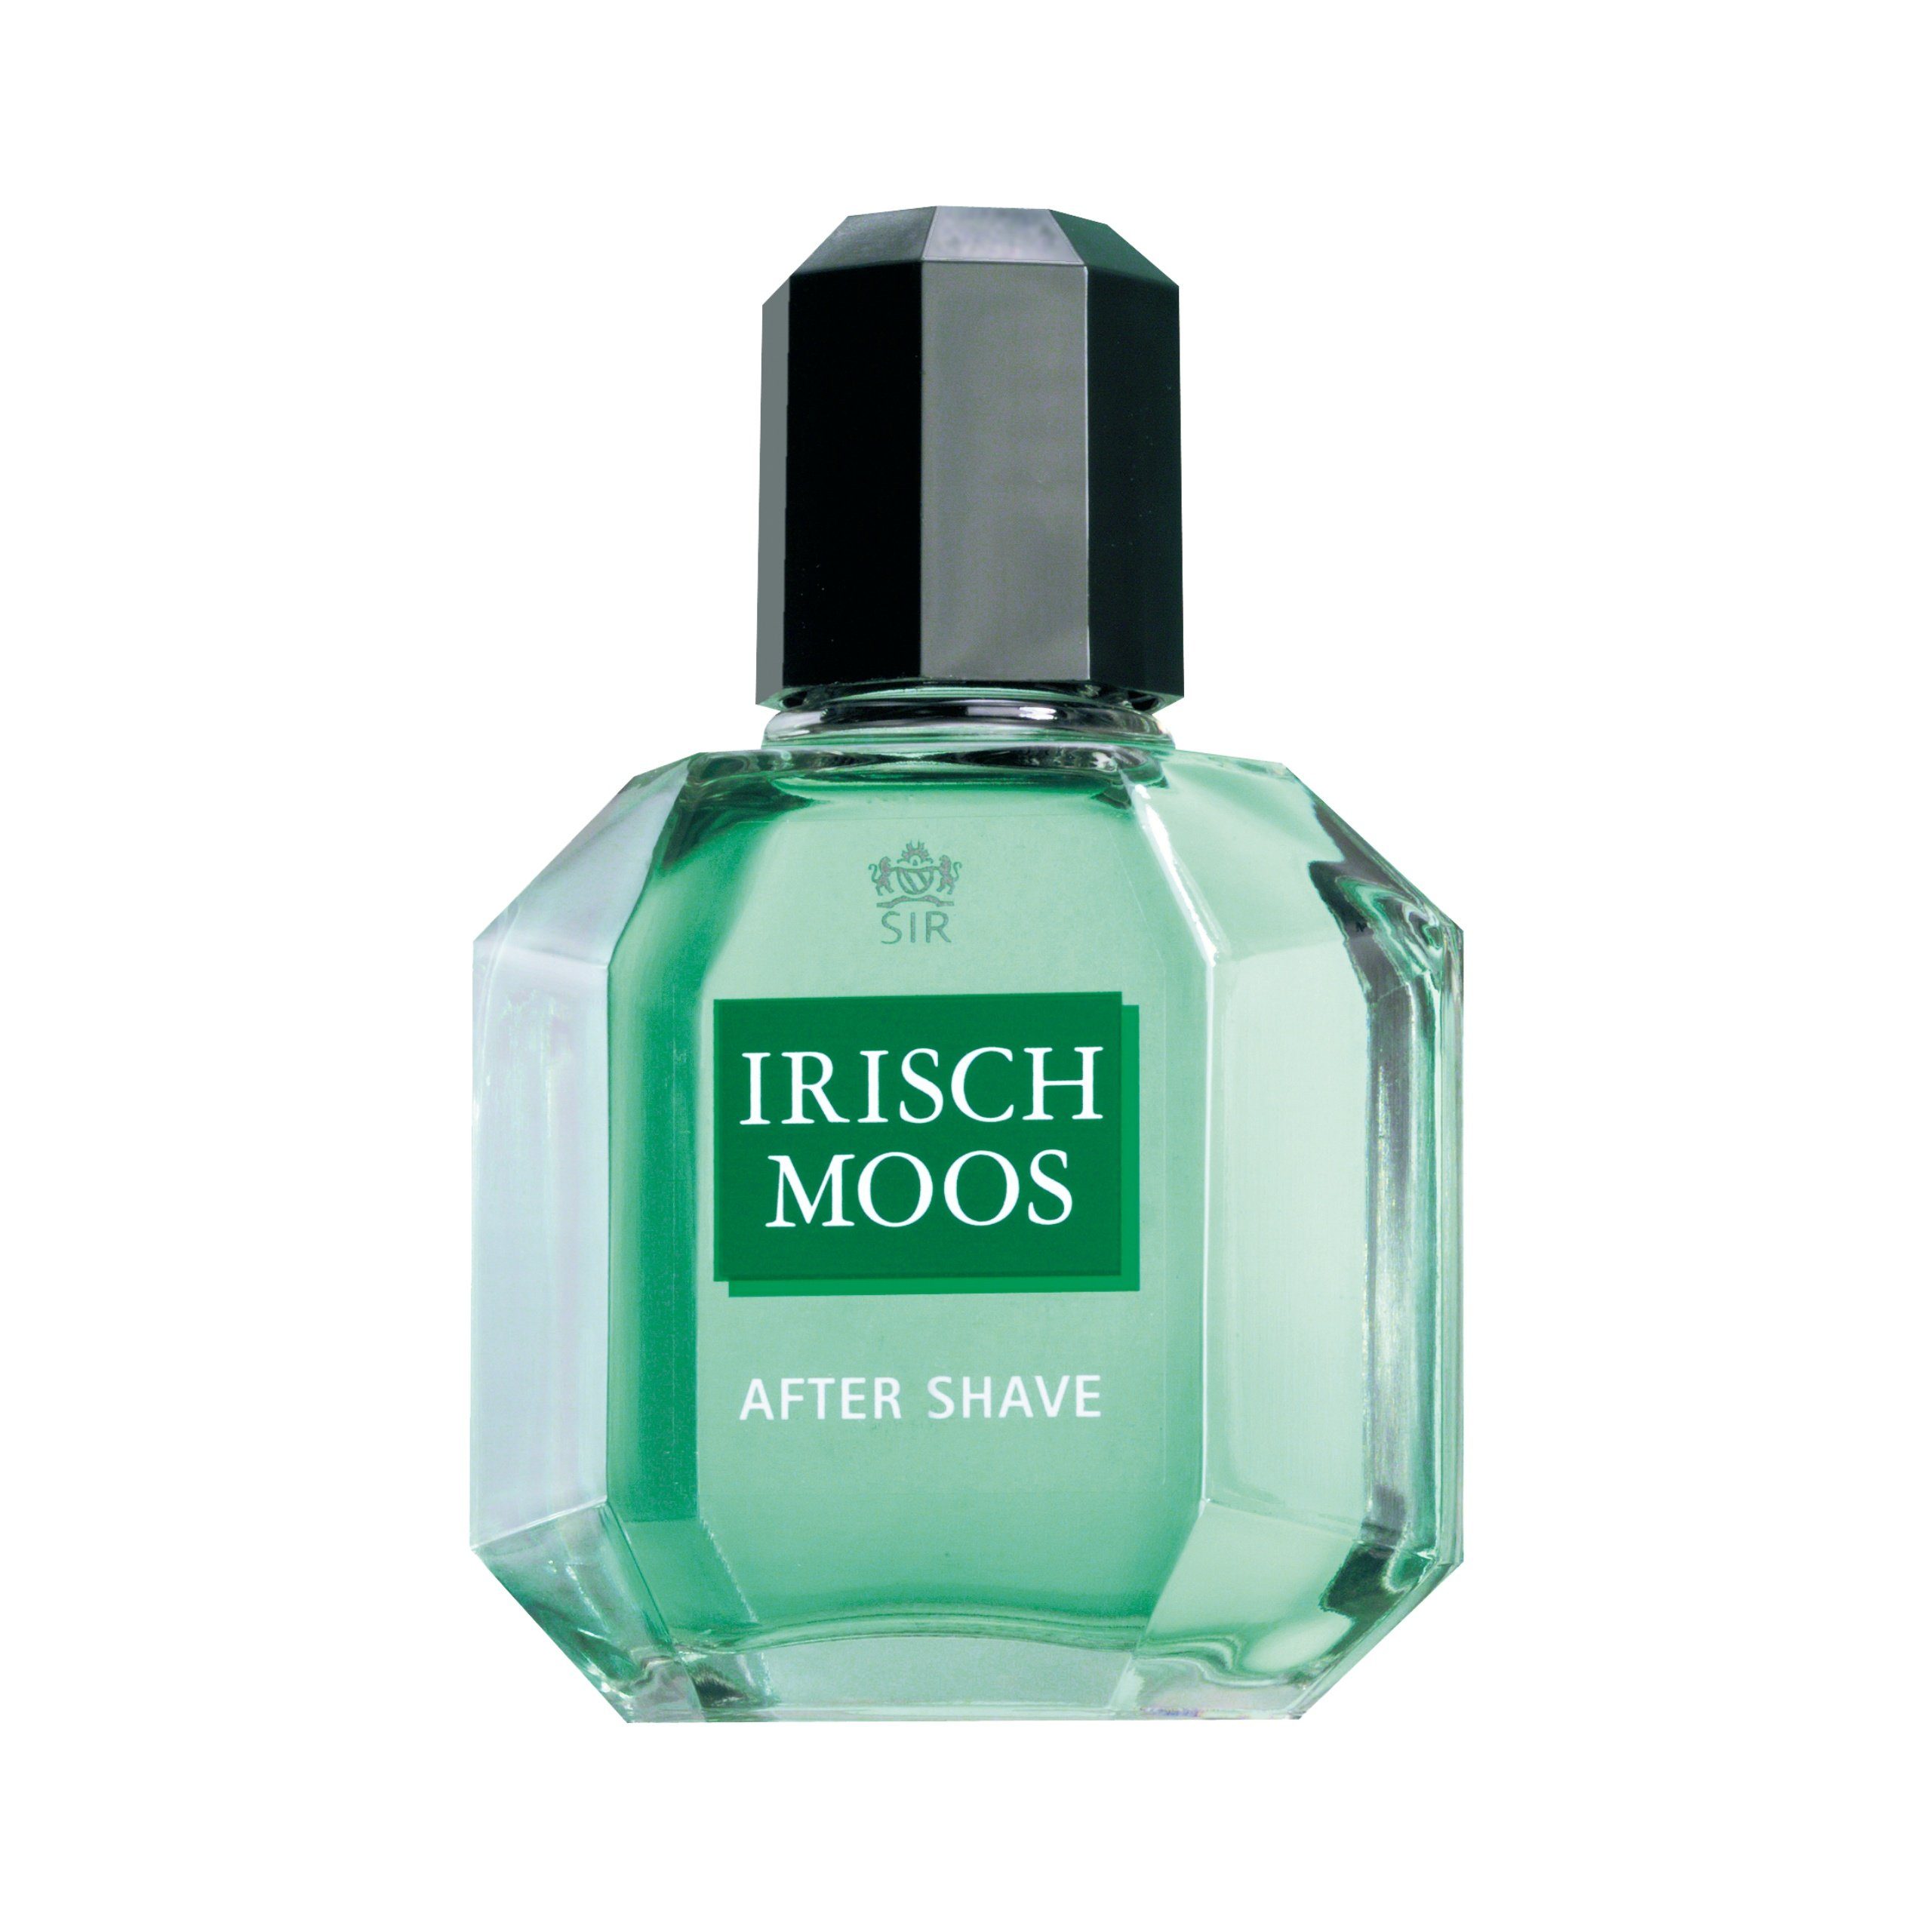 Sir Irisch Moos Lotion Shave Gesichts-Reinigungslotion IRISCH After MOOS ml 100 SIR